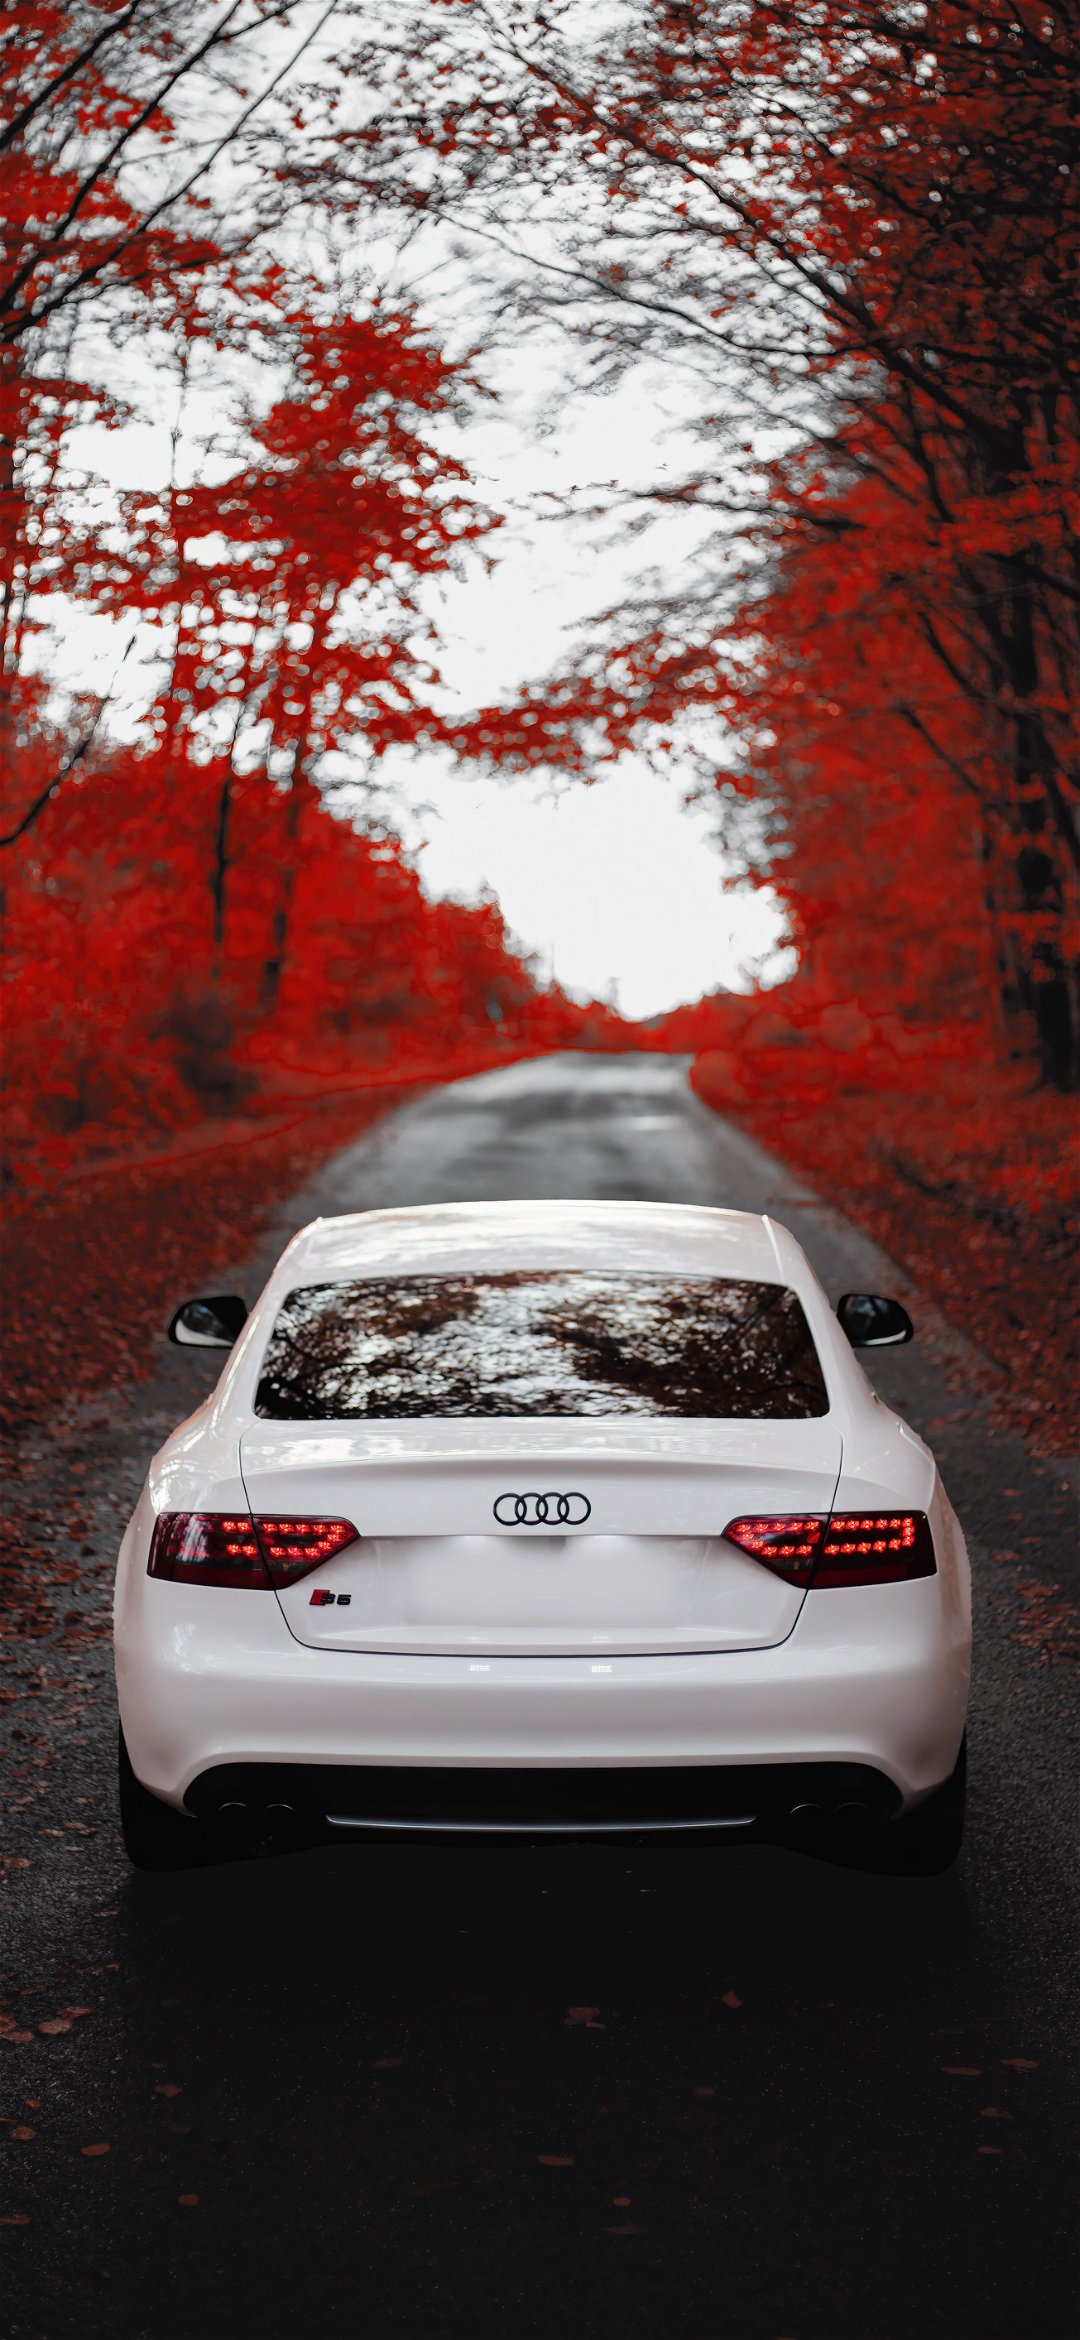 خلفية سيارة أودي بيضاء تحت أوراق الخريف الحمراء